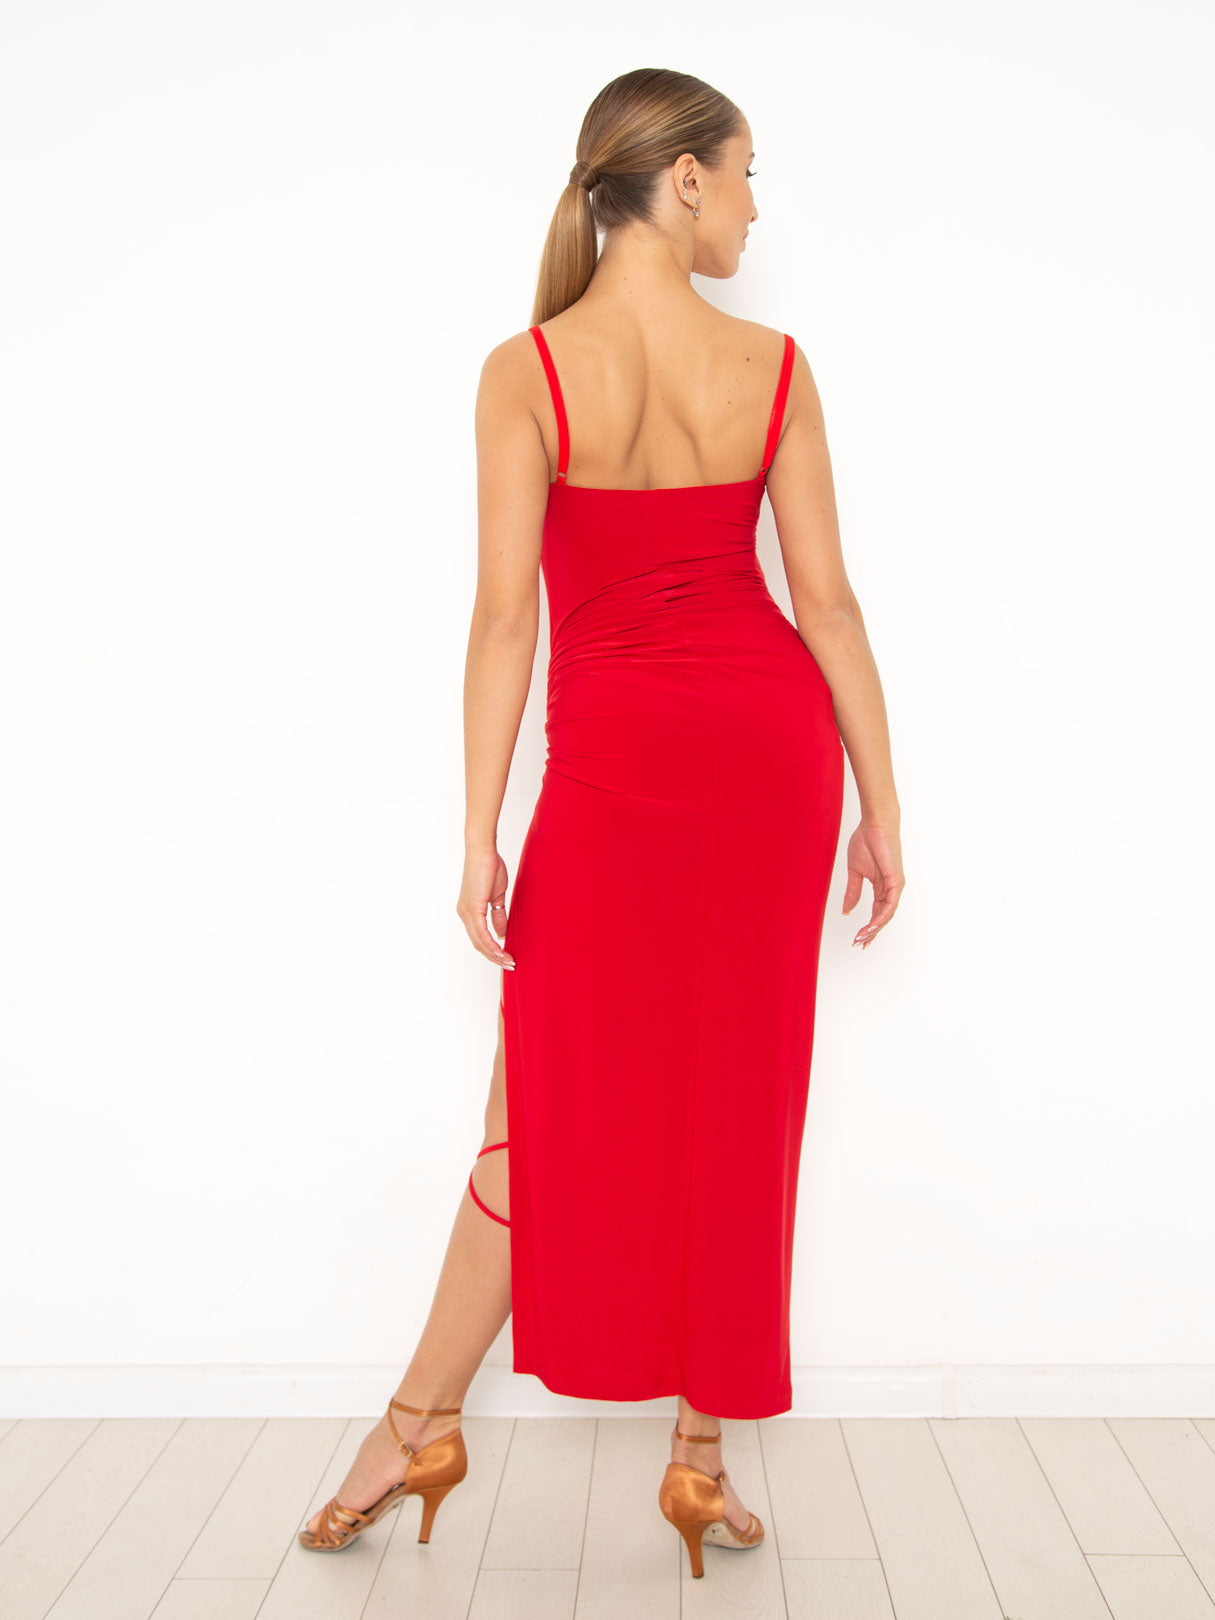 Dress Maxi La Red